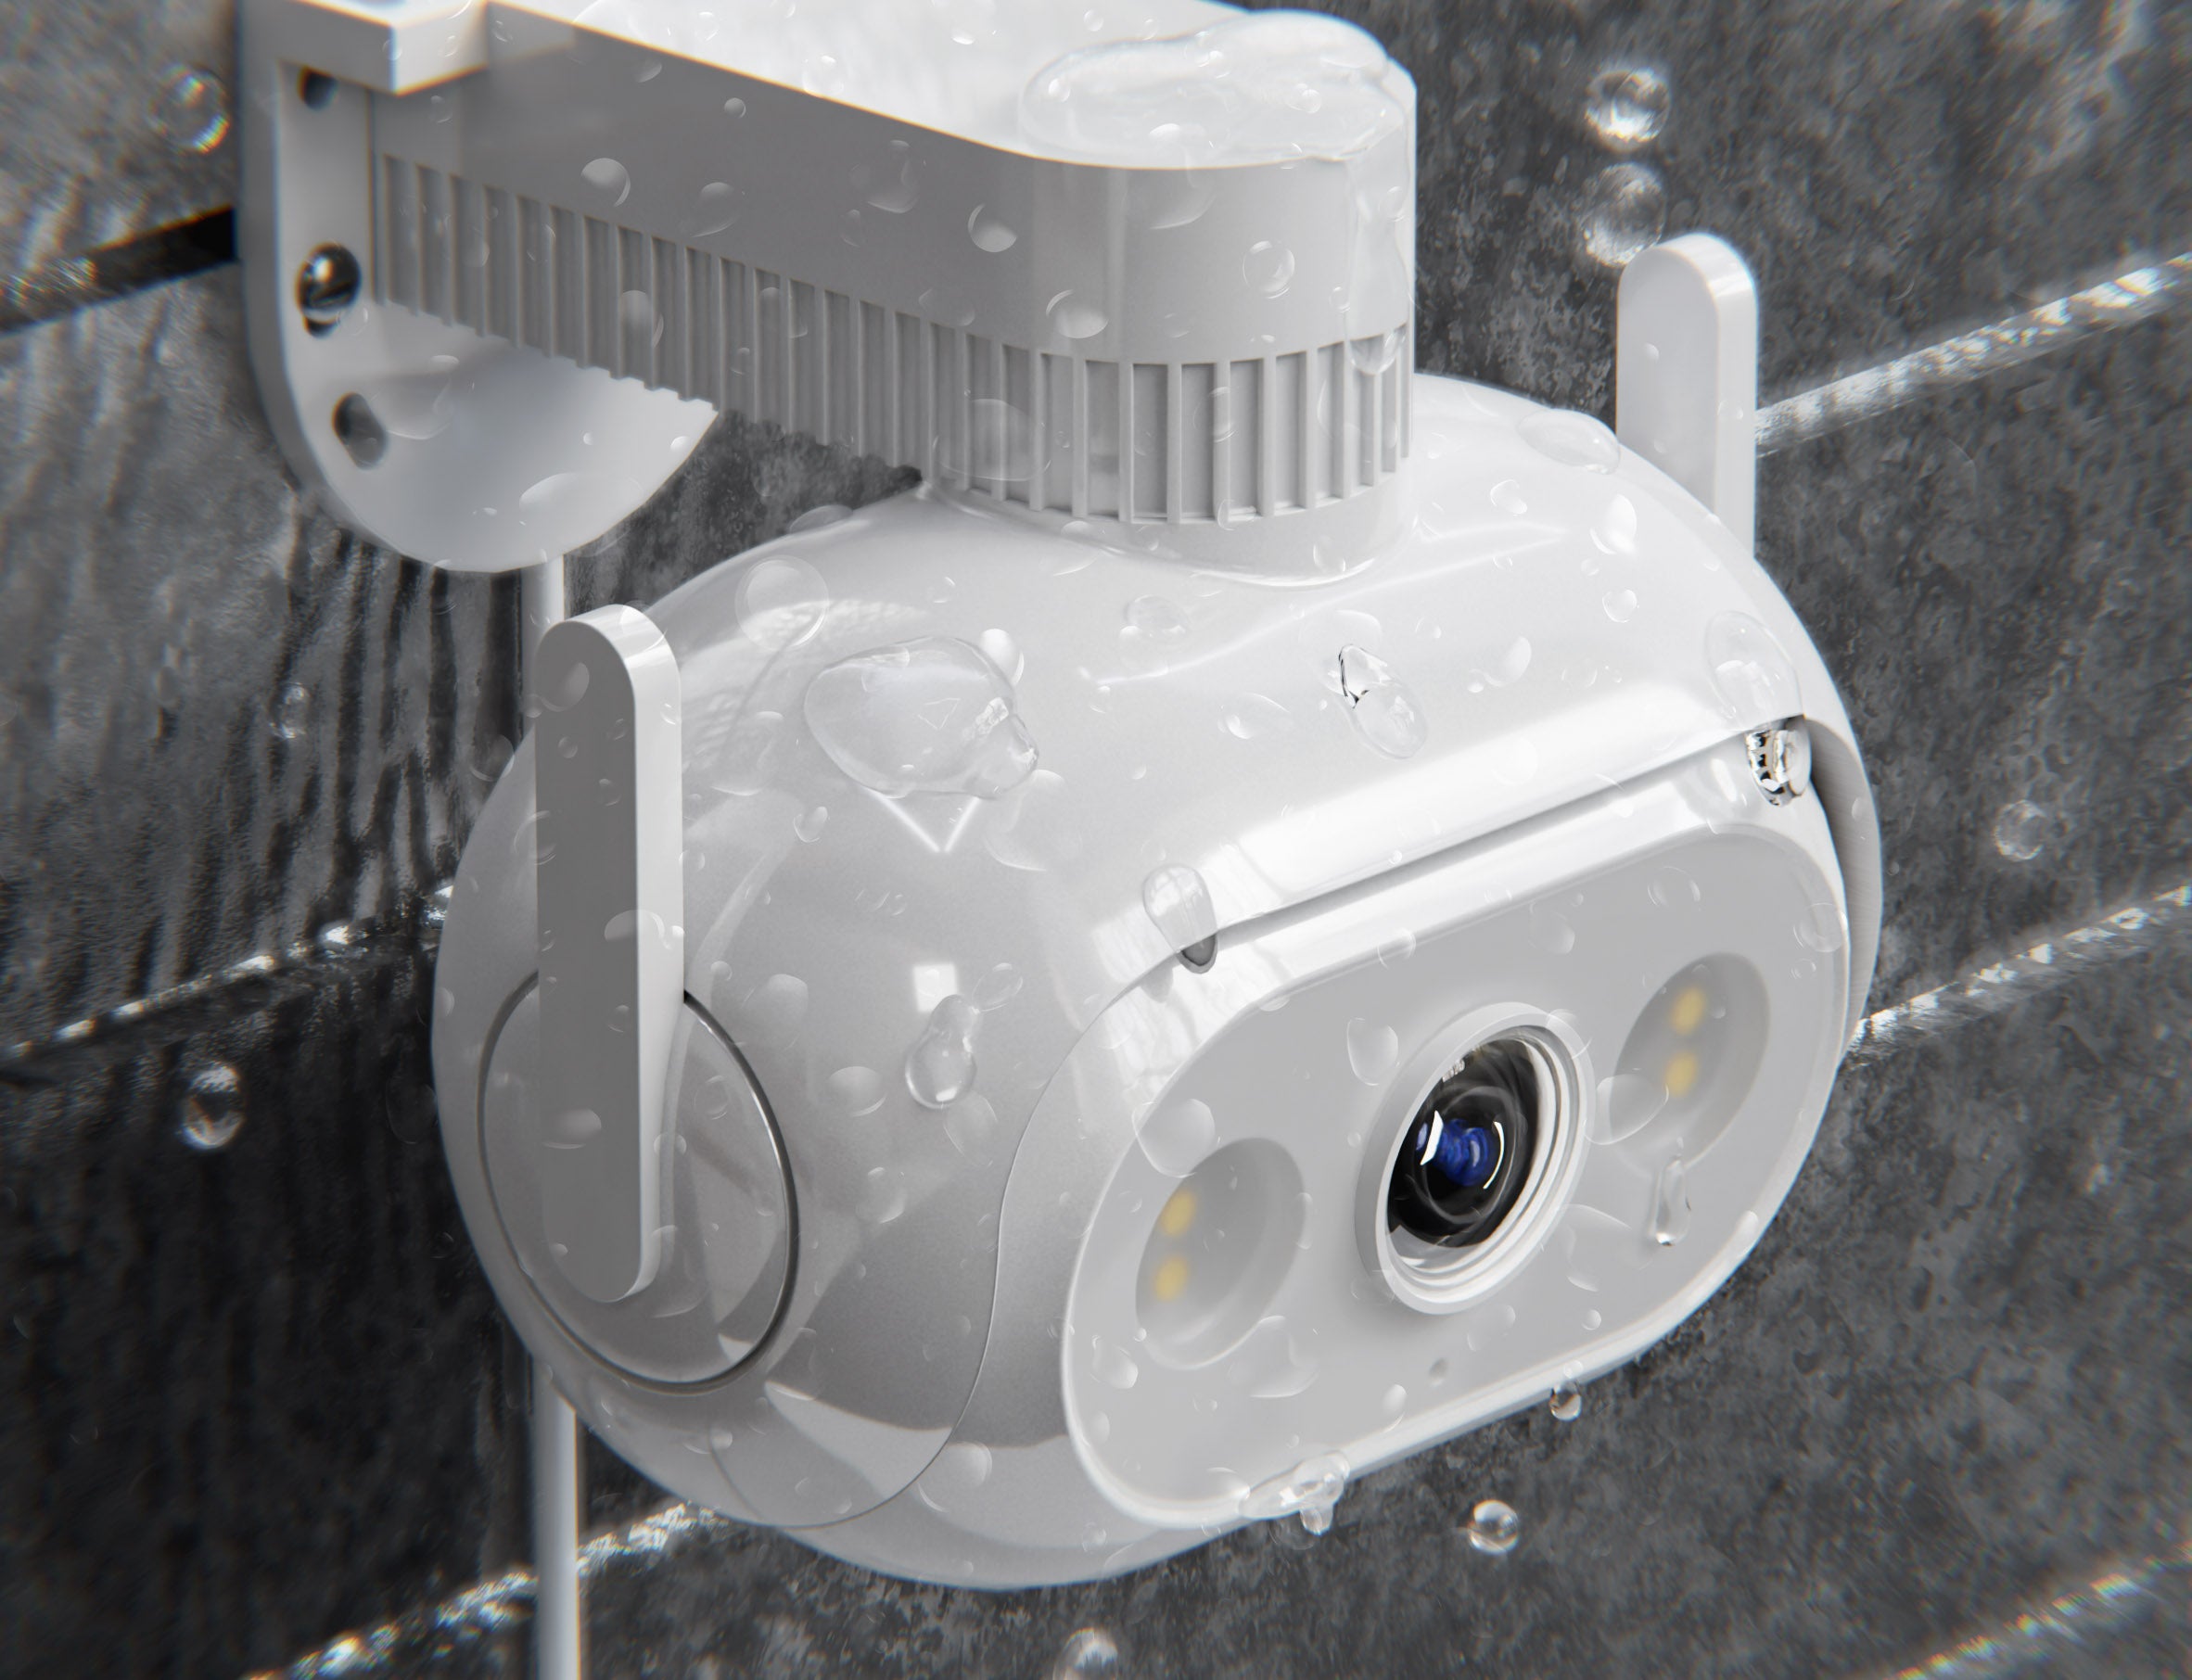 closeup-of-imilab-ec5-camera-hanged-on-grey-brick-wall-during-rain